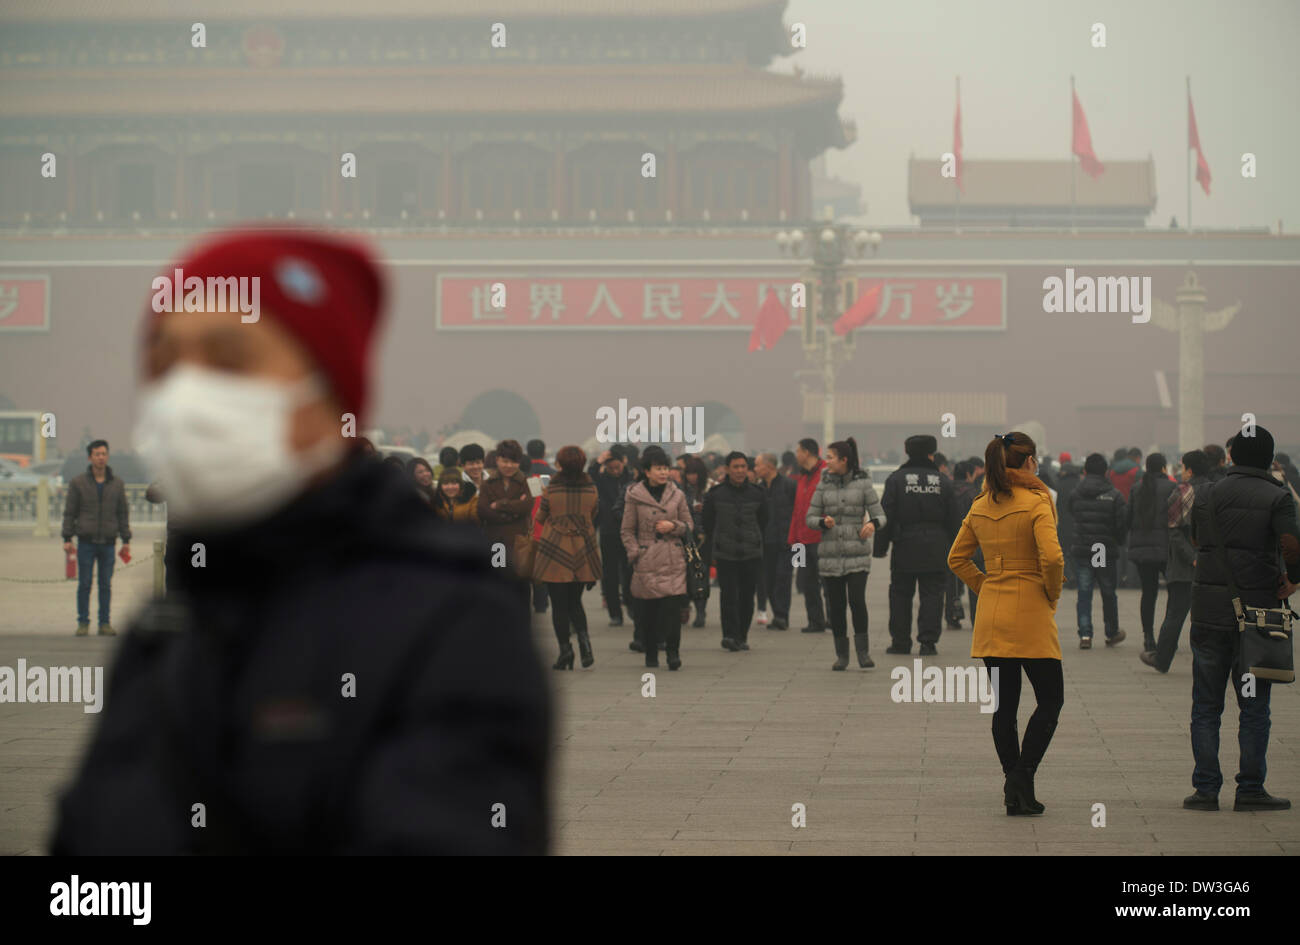 Un homme porte un masque à la place Tiananmen à Pékin le 26 février 2014. La pollution atmosphérique a enveloppé certaines parties de la Chine du Nord-Est depuis vendredi dernier, les résidents de quitter l'étouffement sur les niveaux de smog dangereux Crédit : Lou Linwei/Alamy Live News Banque D'Images